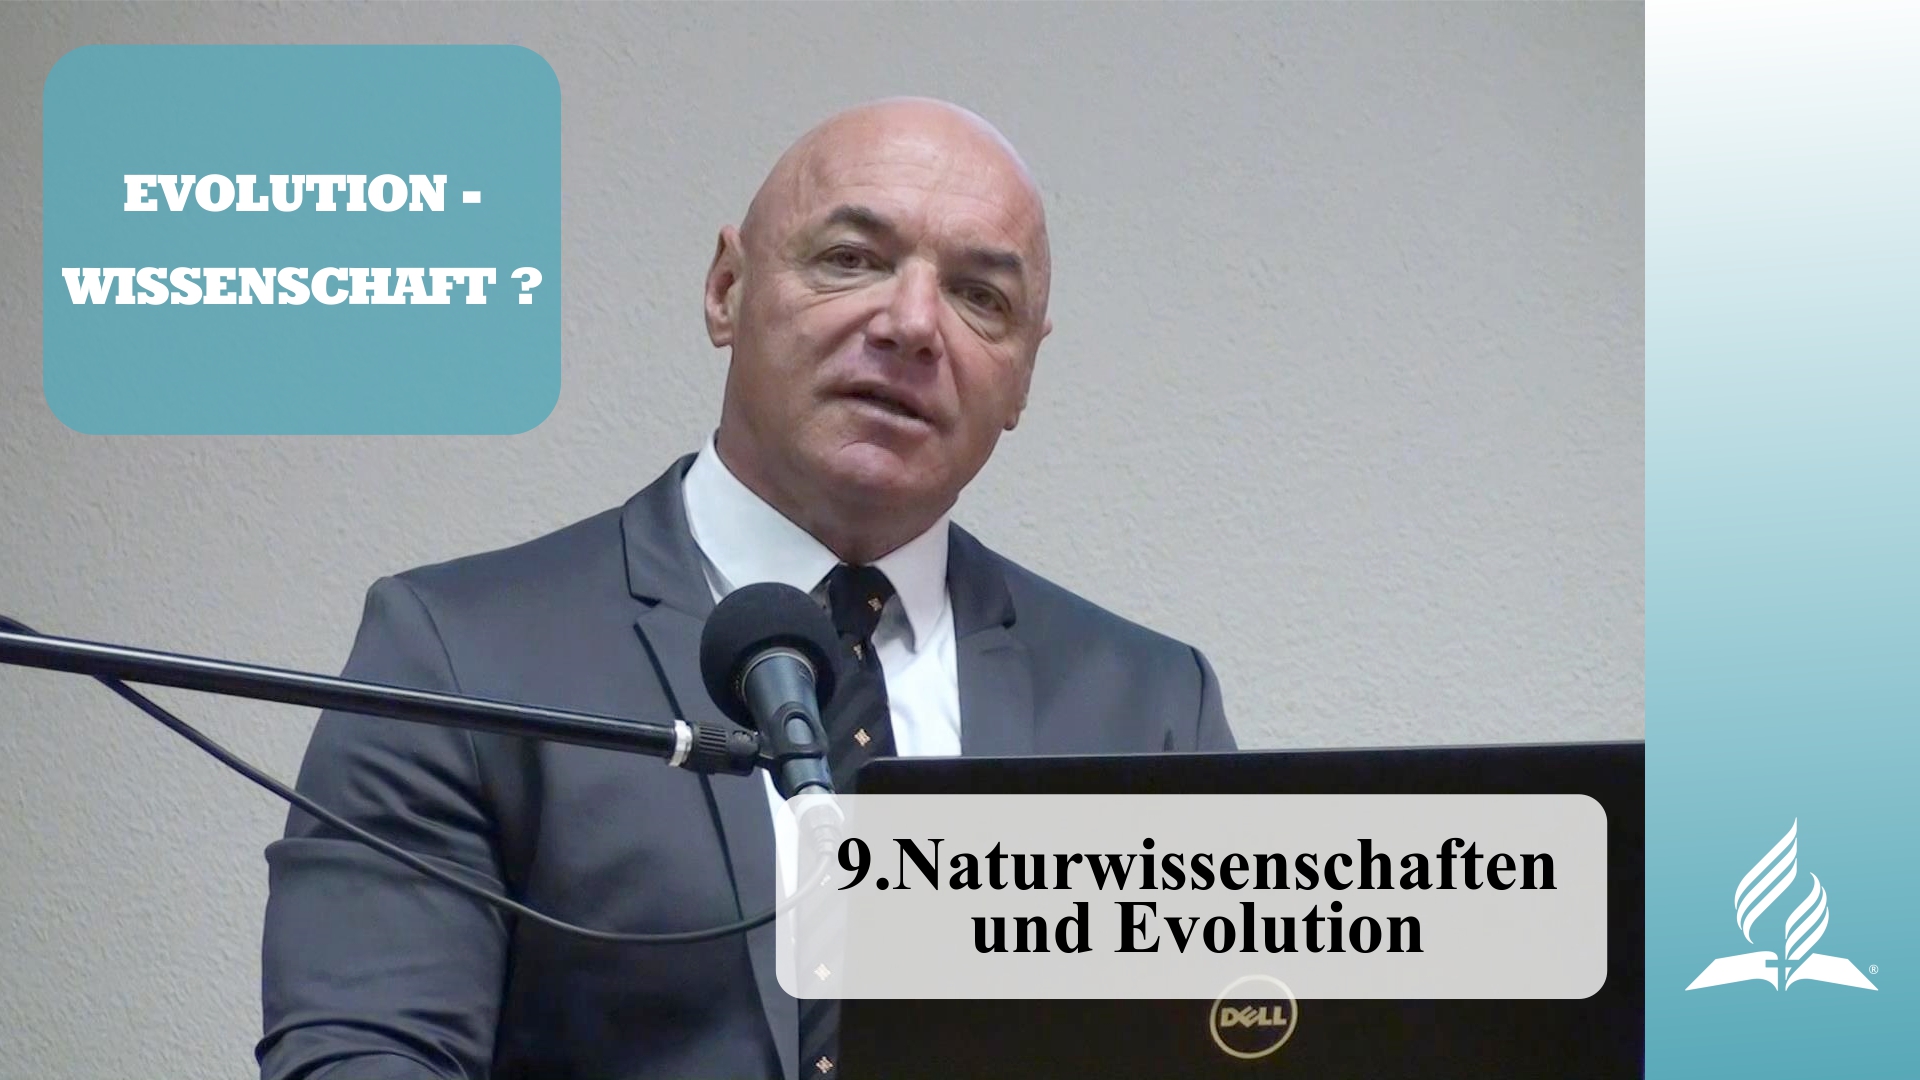 9.Naturwissenschaften und Evolution – EVOLUTION-WISSENSCHAFT? | Dr. med. univ. Klaus Gstirner